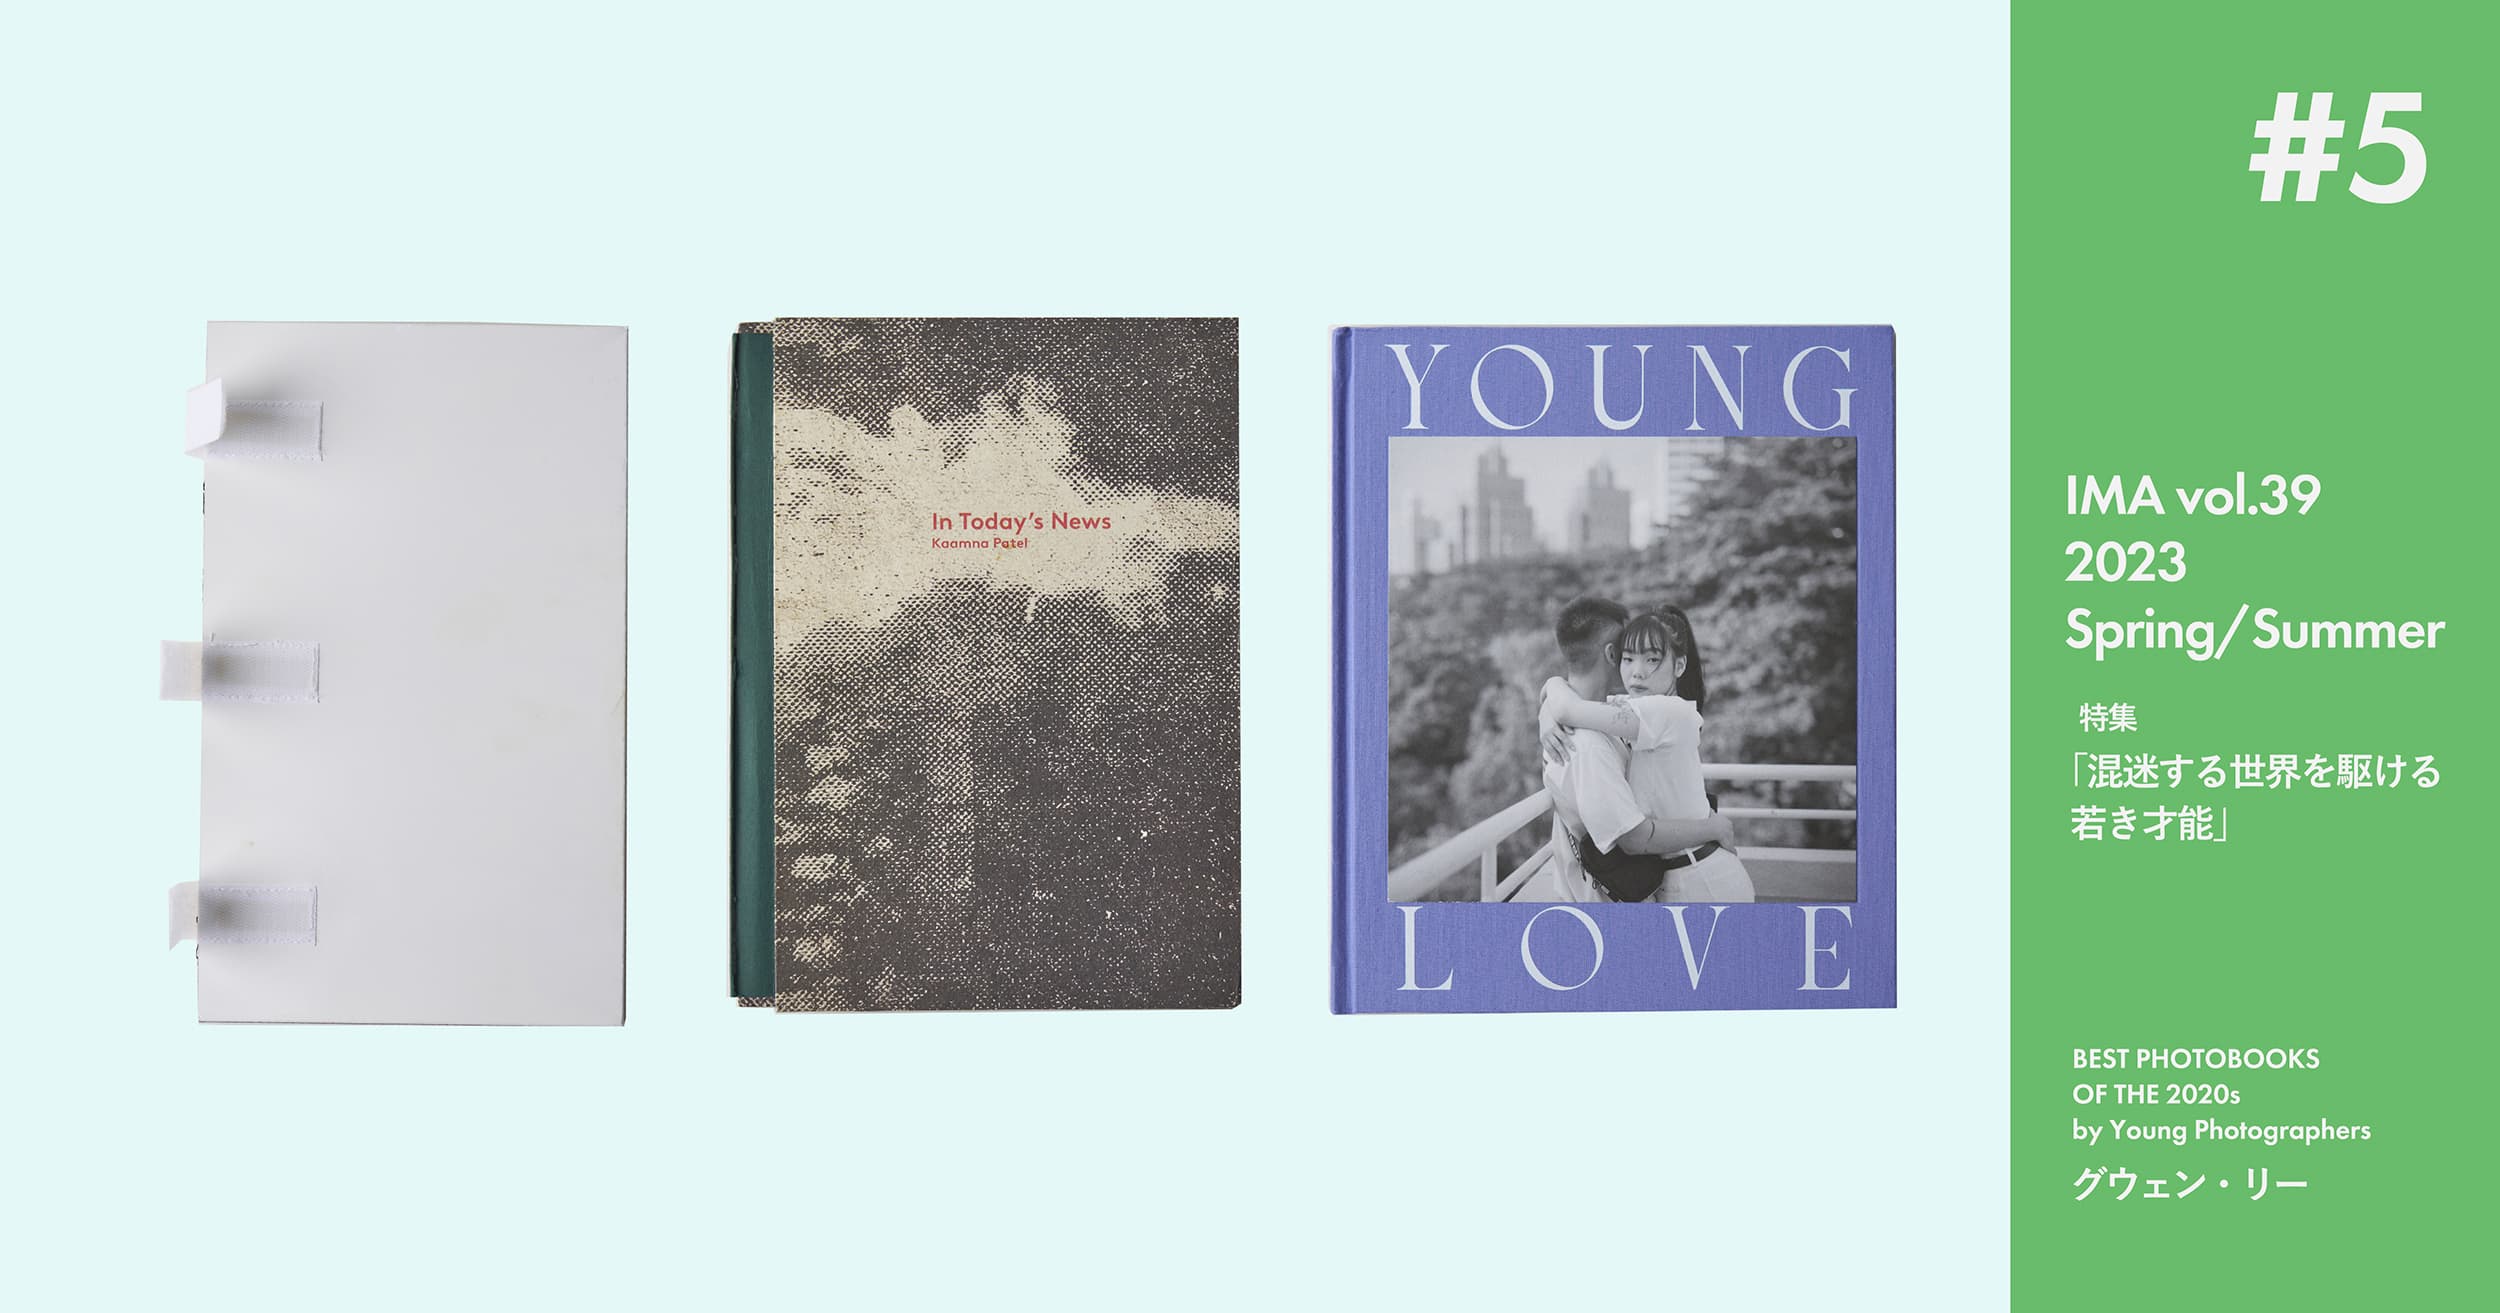 グウェン・リーが選ぶ若手作家による2020年代のベスト写真集3冊【IMA Vol.39特集】 | グウェン・リーが選ぶ、若手作家による2020年代のベスト写真集3冊【IMA Vol.39特集】